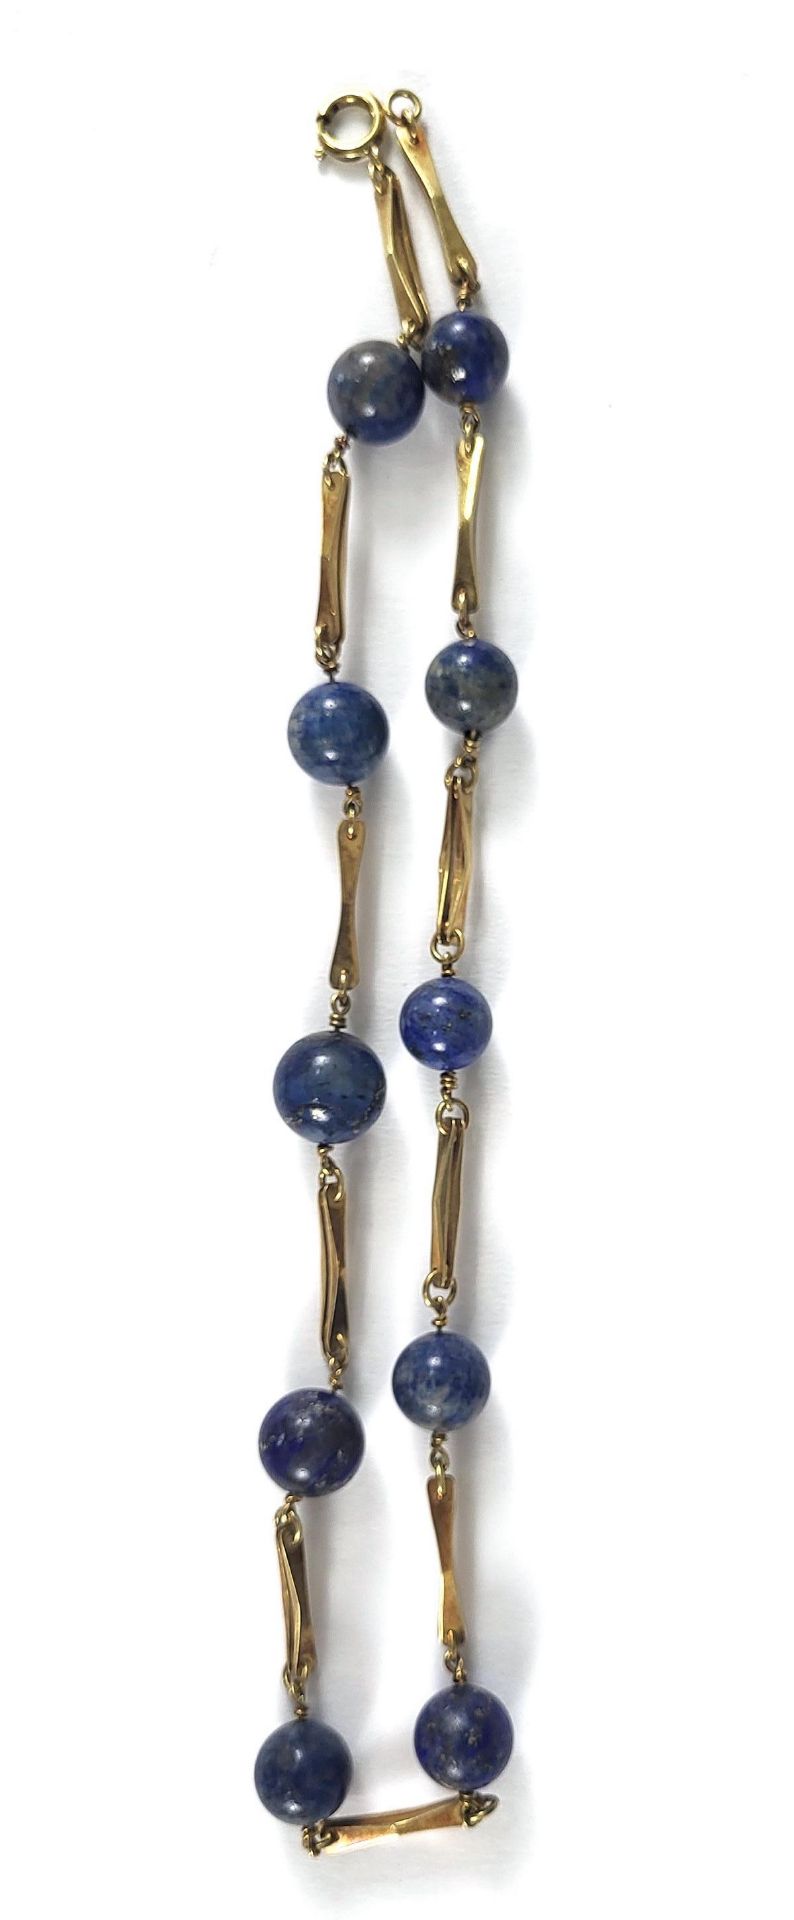 Halskette mit Lapislazuli Perlen und 14 kt Goldkette - Image 2 of 2